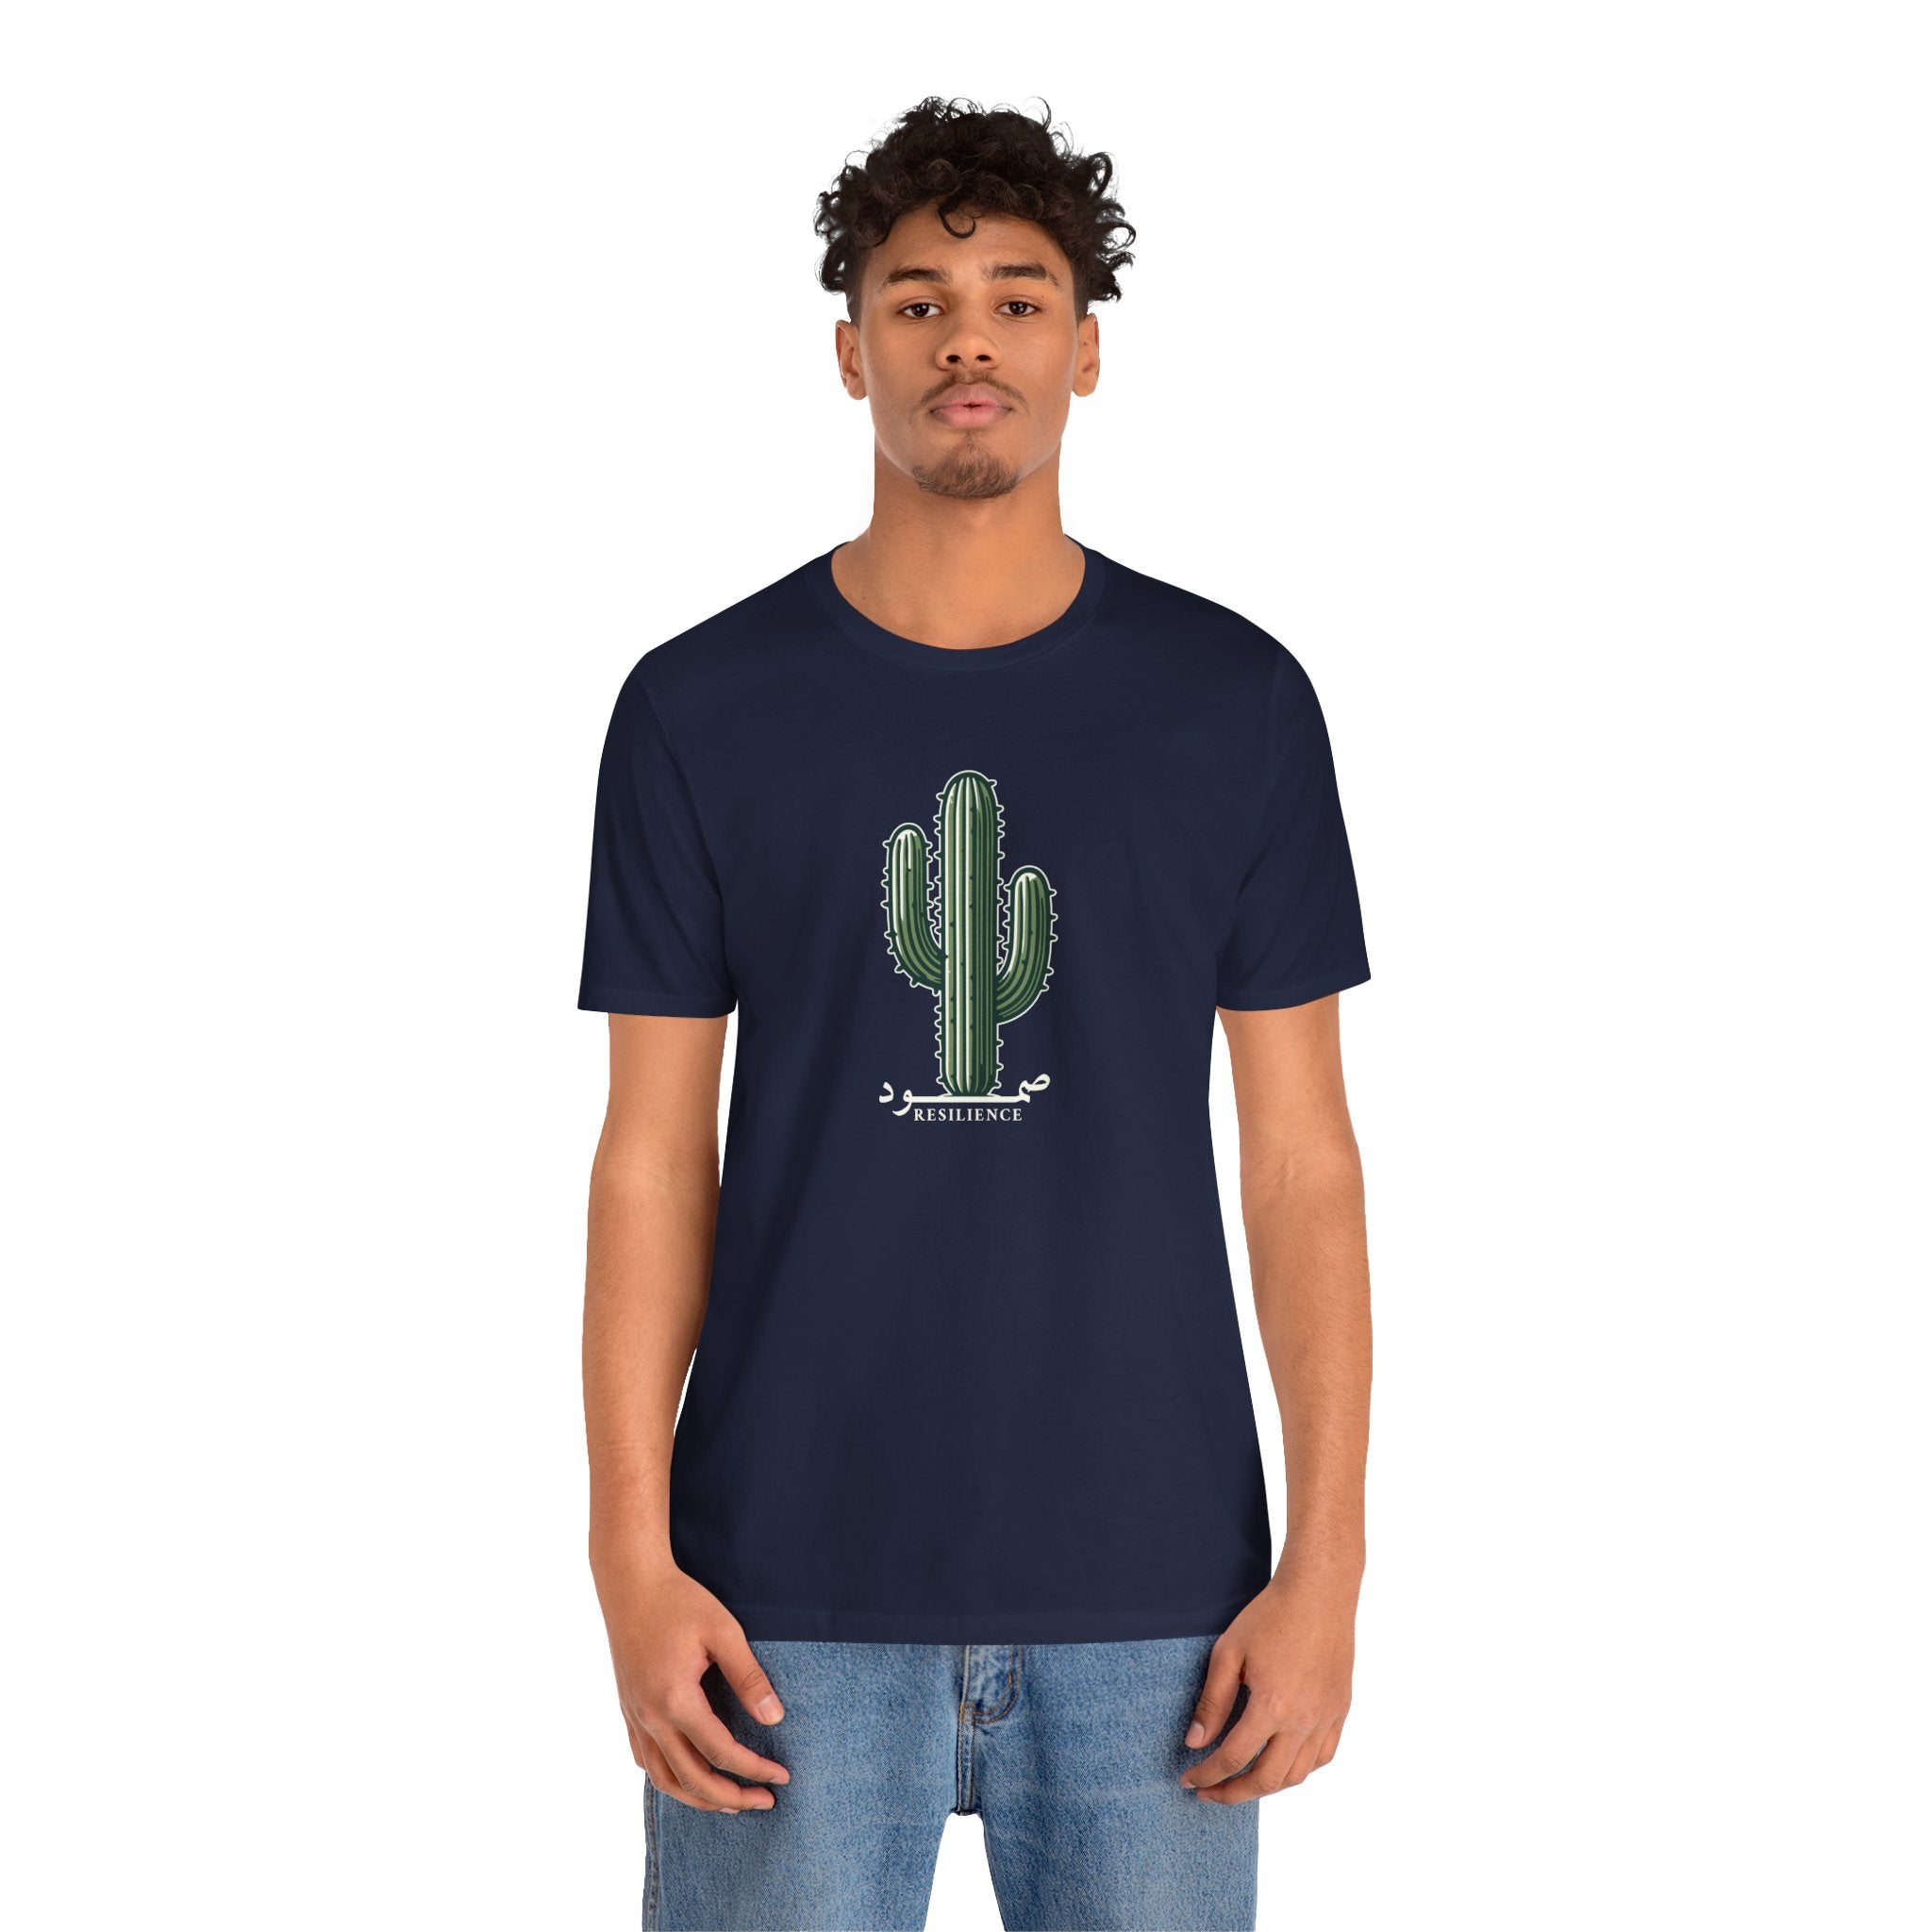 Desert Strength: Cactus Resilience